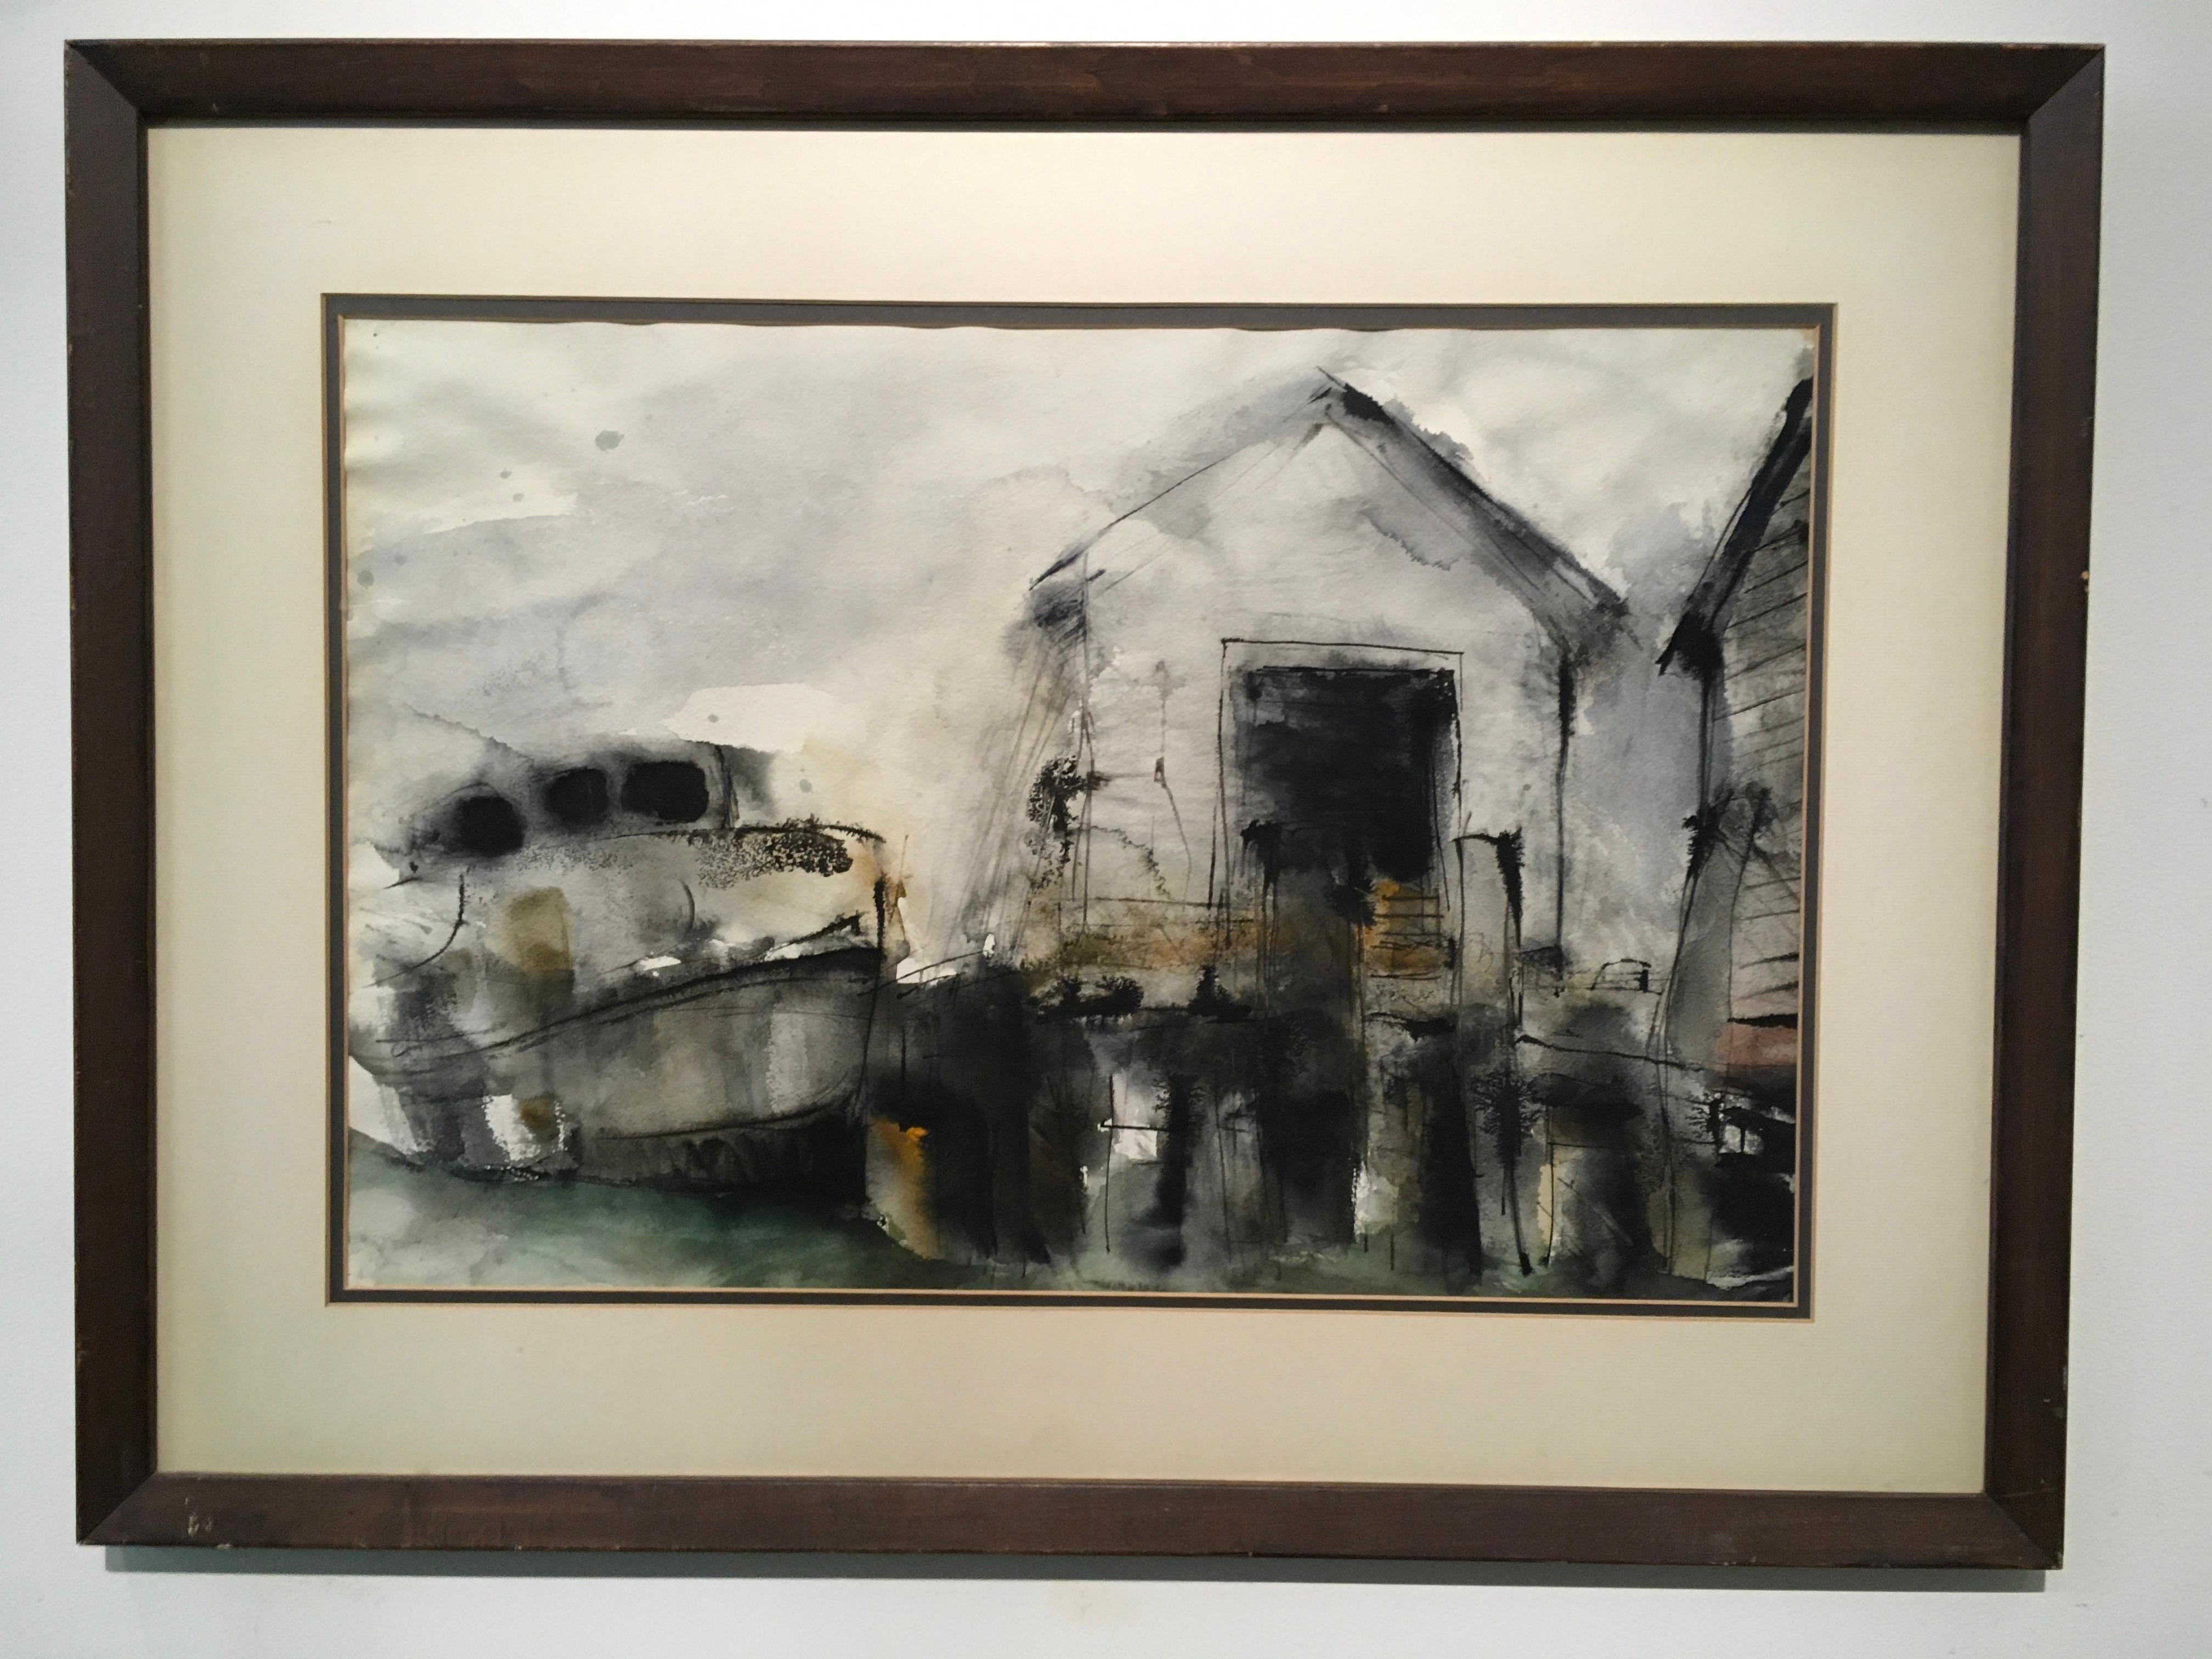 Landscape Painting Unknown - « Barn with Boat Dock », par Inconnu, peinture à l'encre et à l'aquarelle